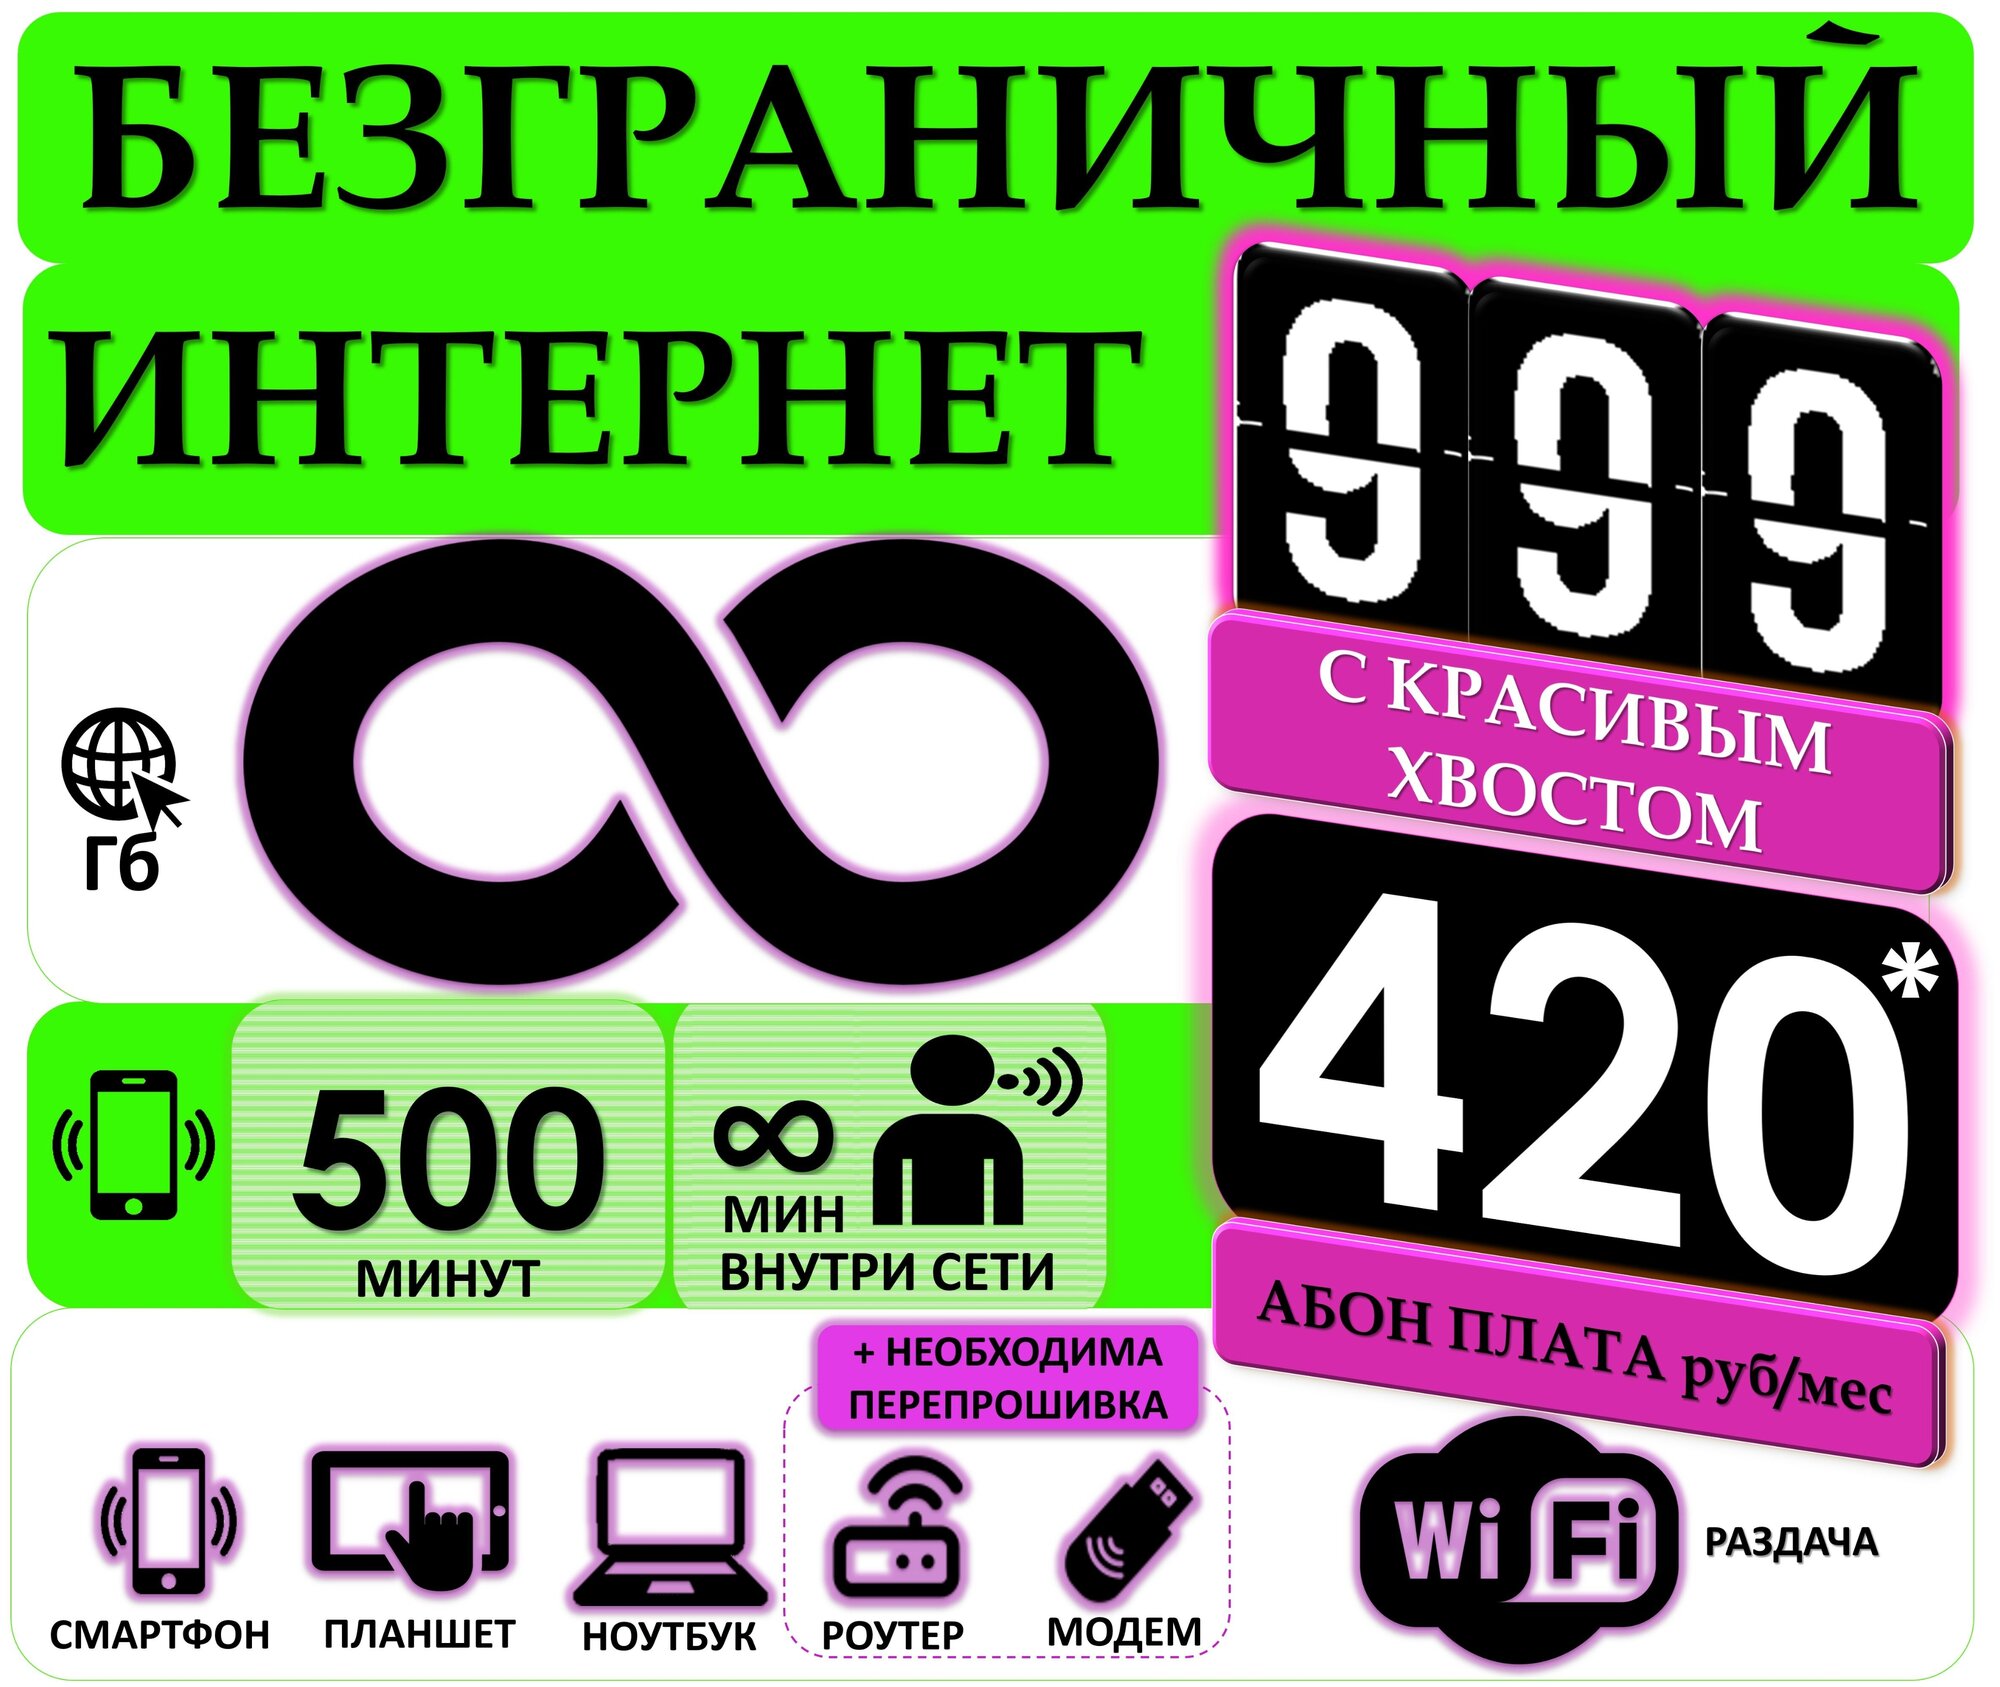 СИМ карта с Раздачей Безлимитного интернета и Красивым номером с хвостом 999 Абон. плата за тариф 420руб/мес 500мин.